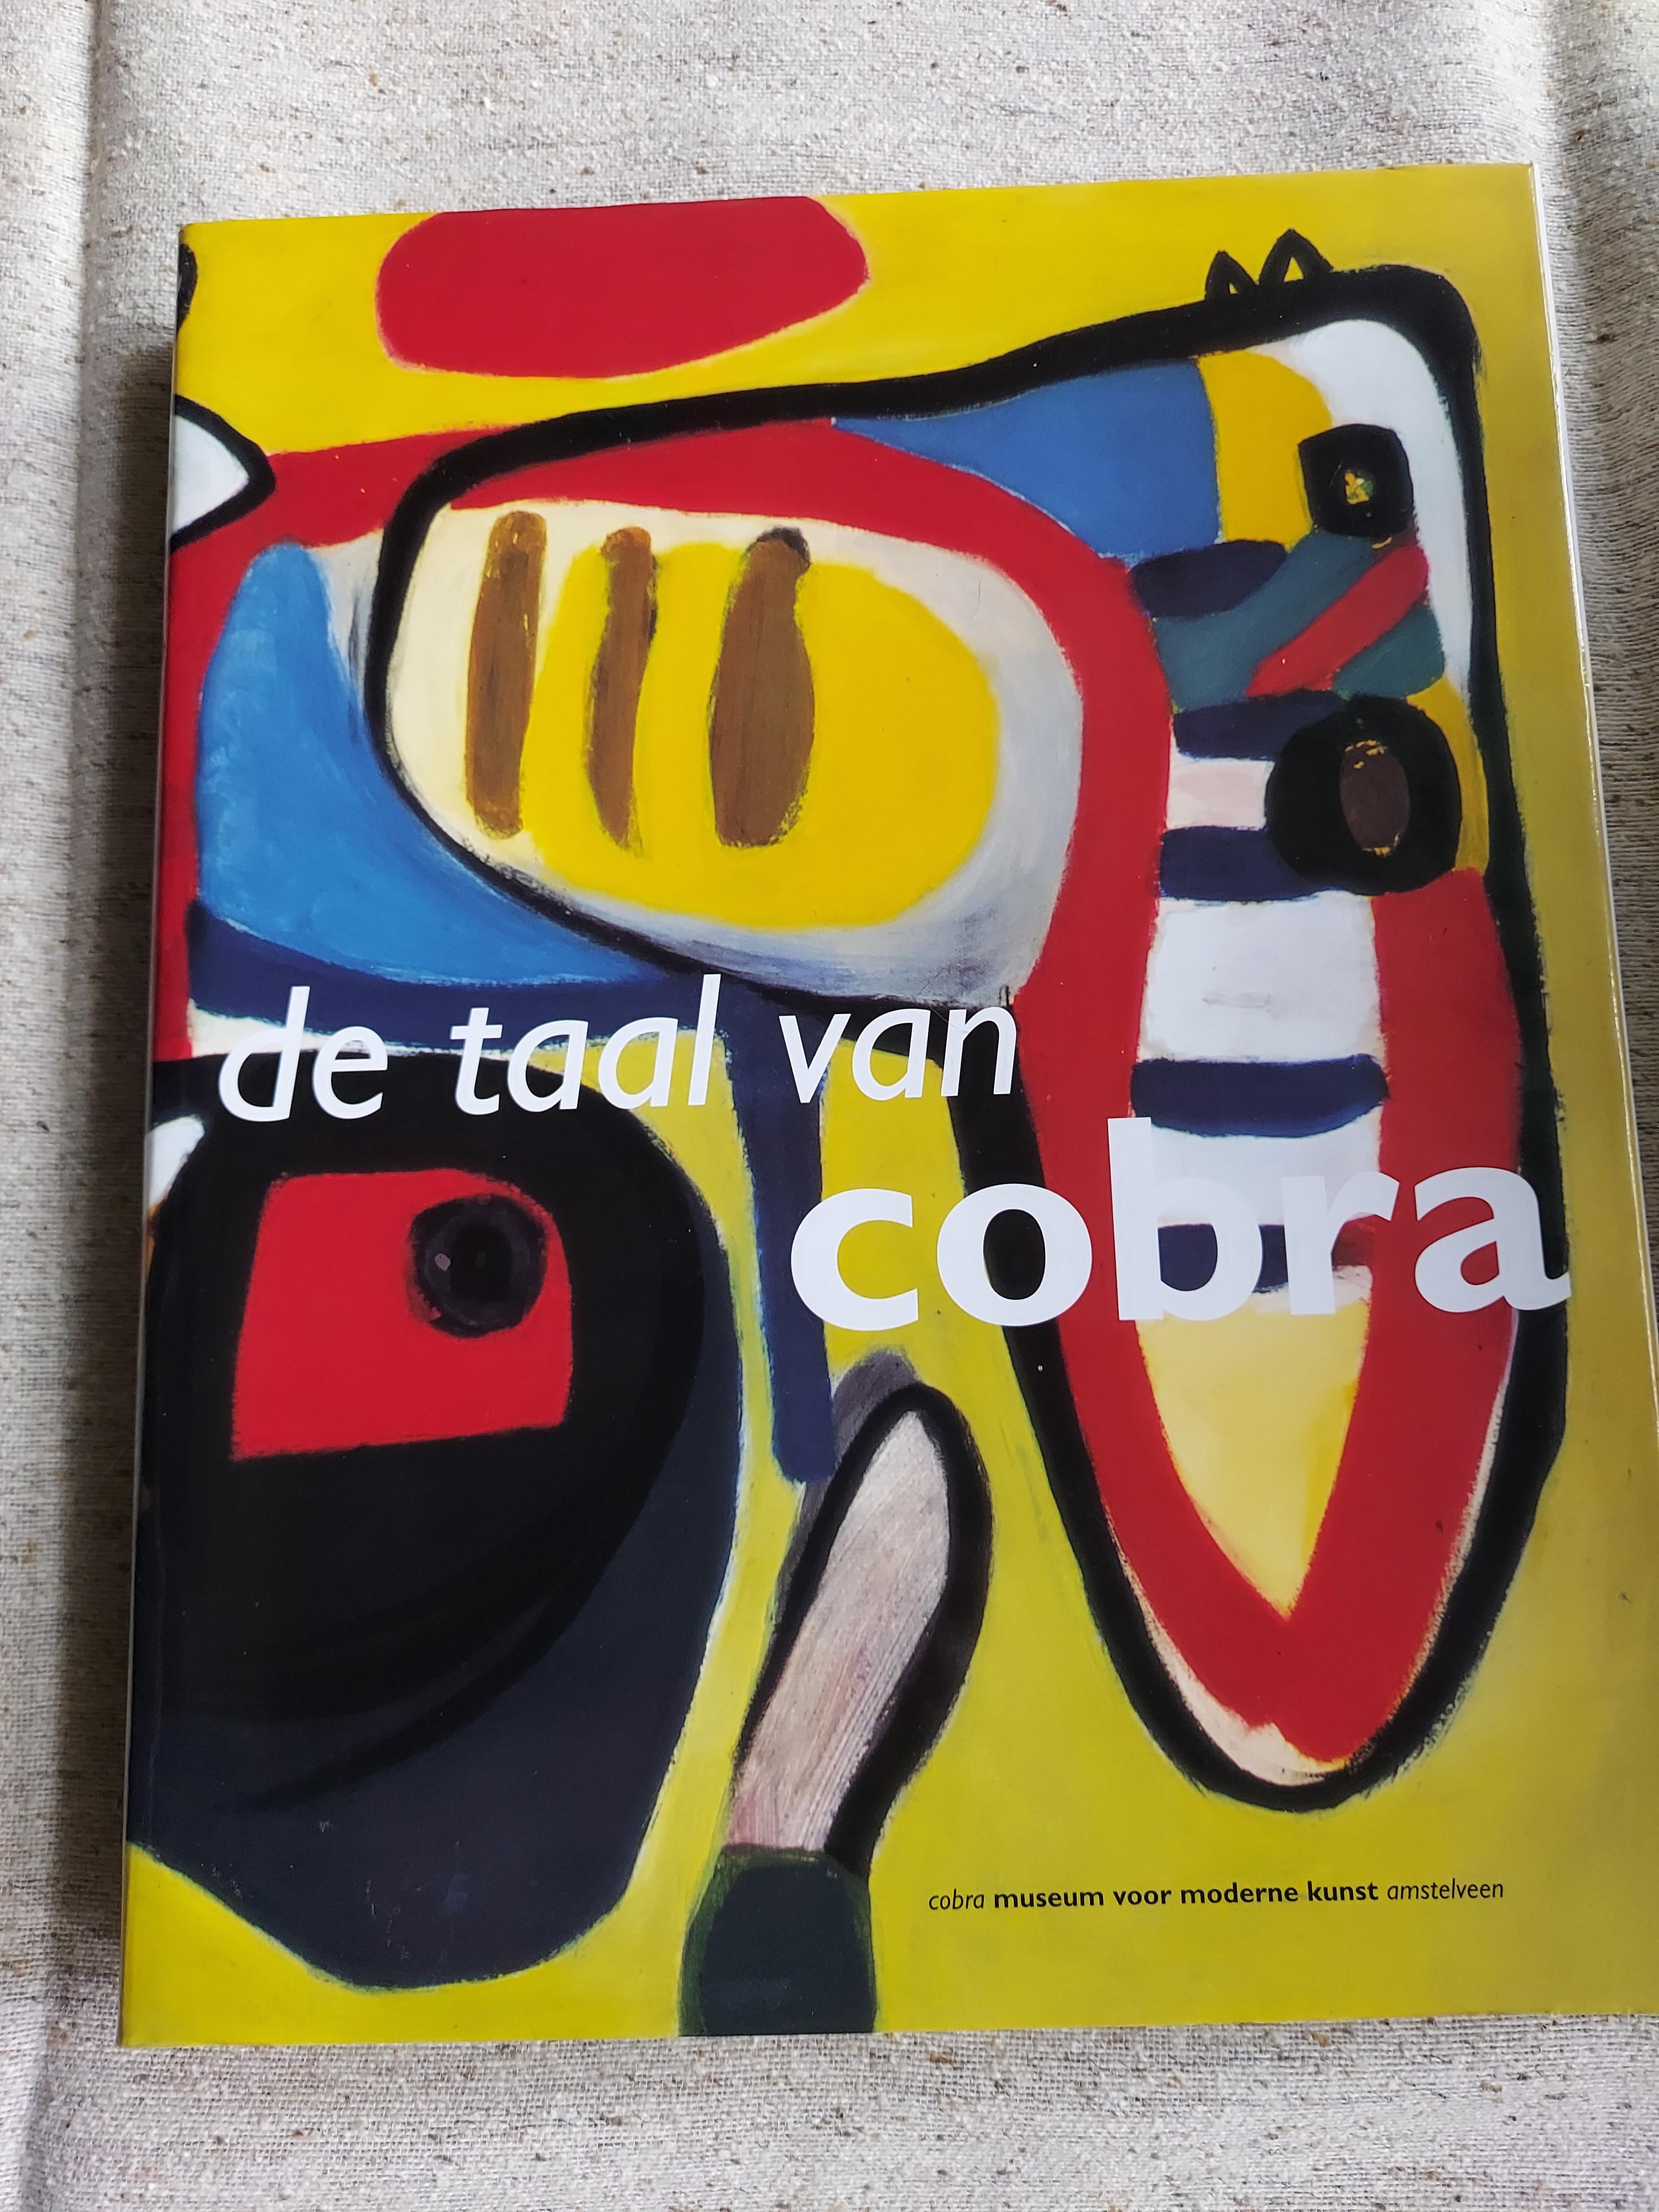 De taal van cobra. Redacteur Willemijn Stokvis